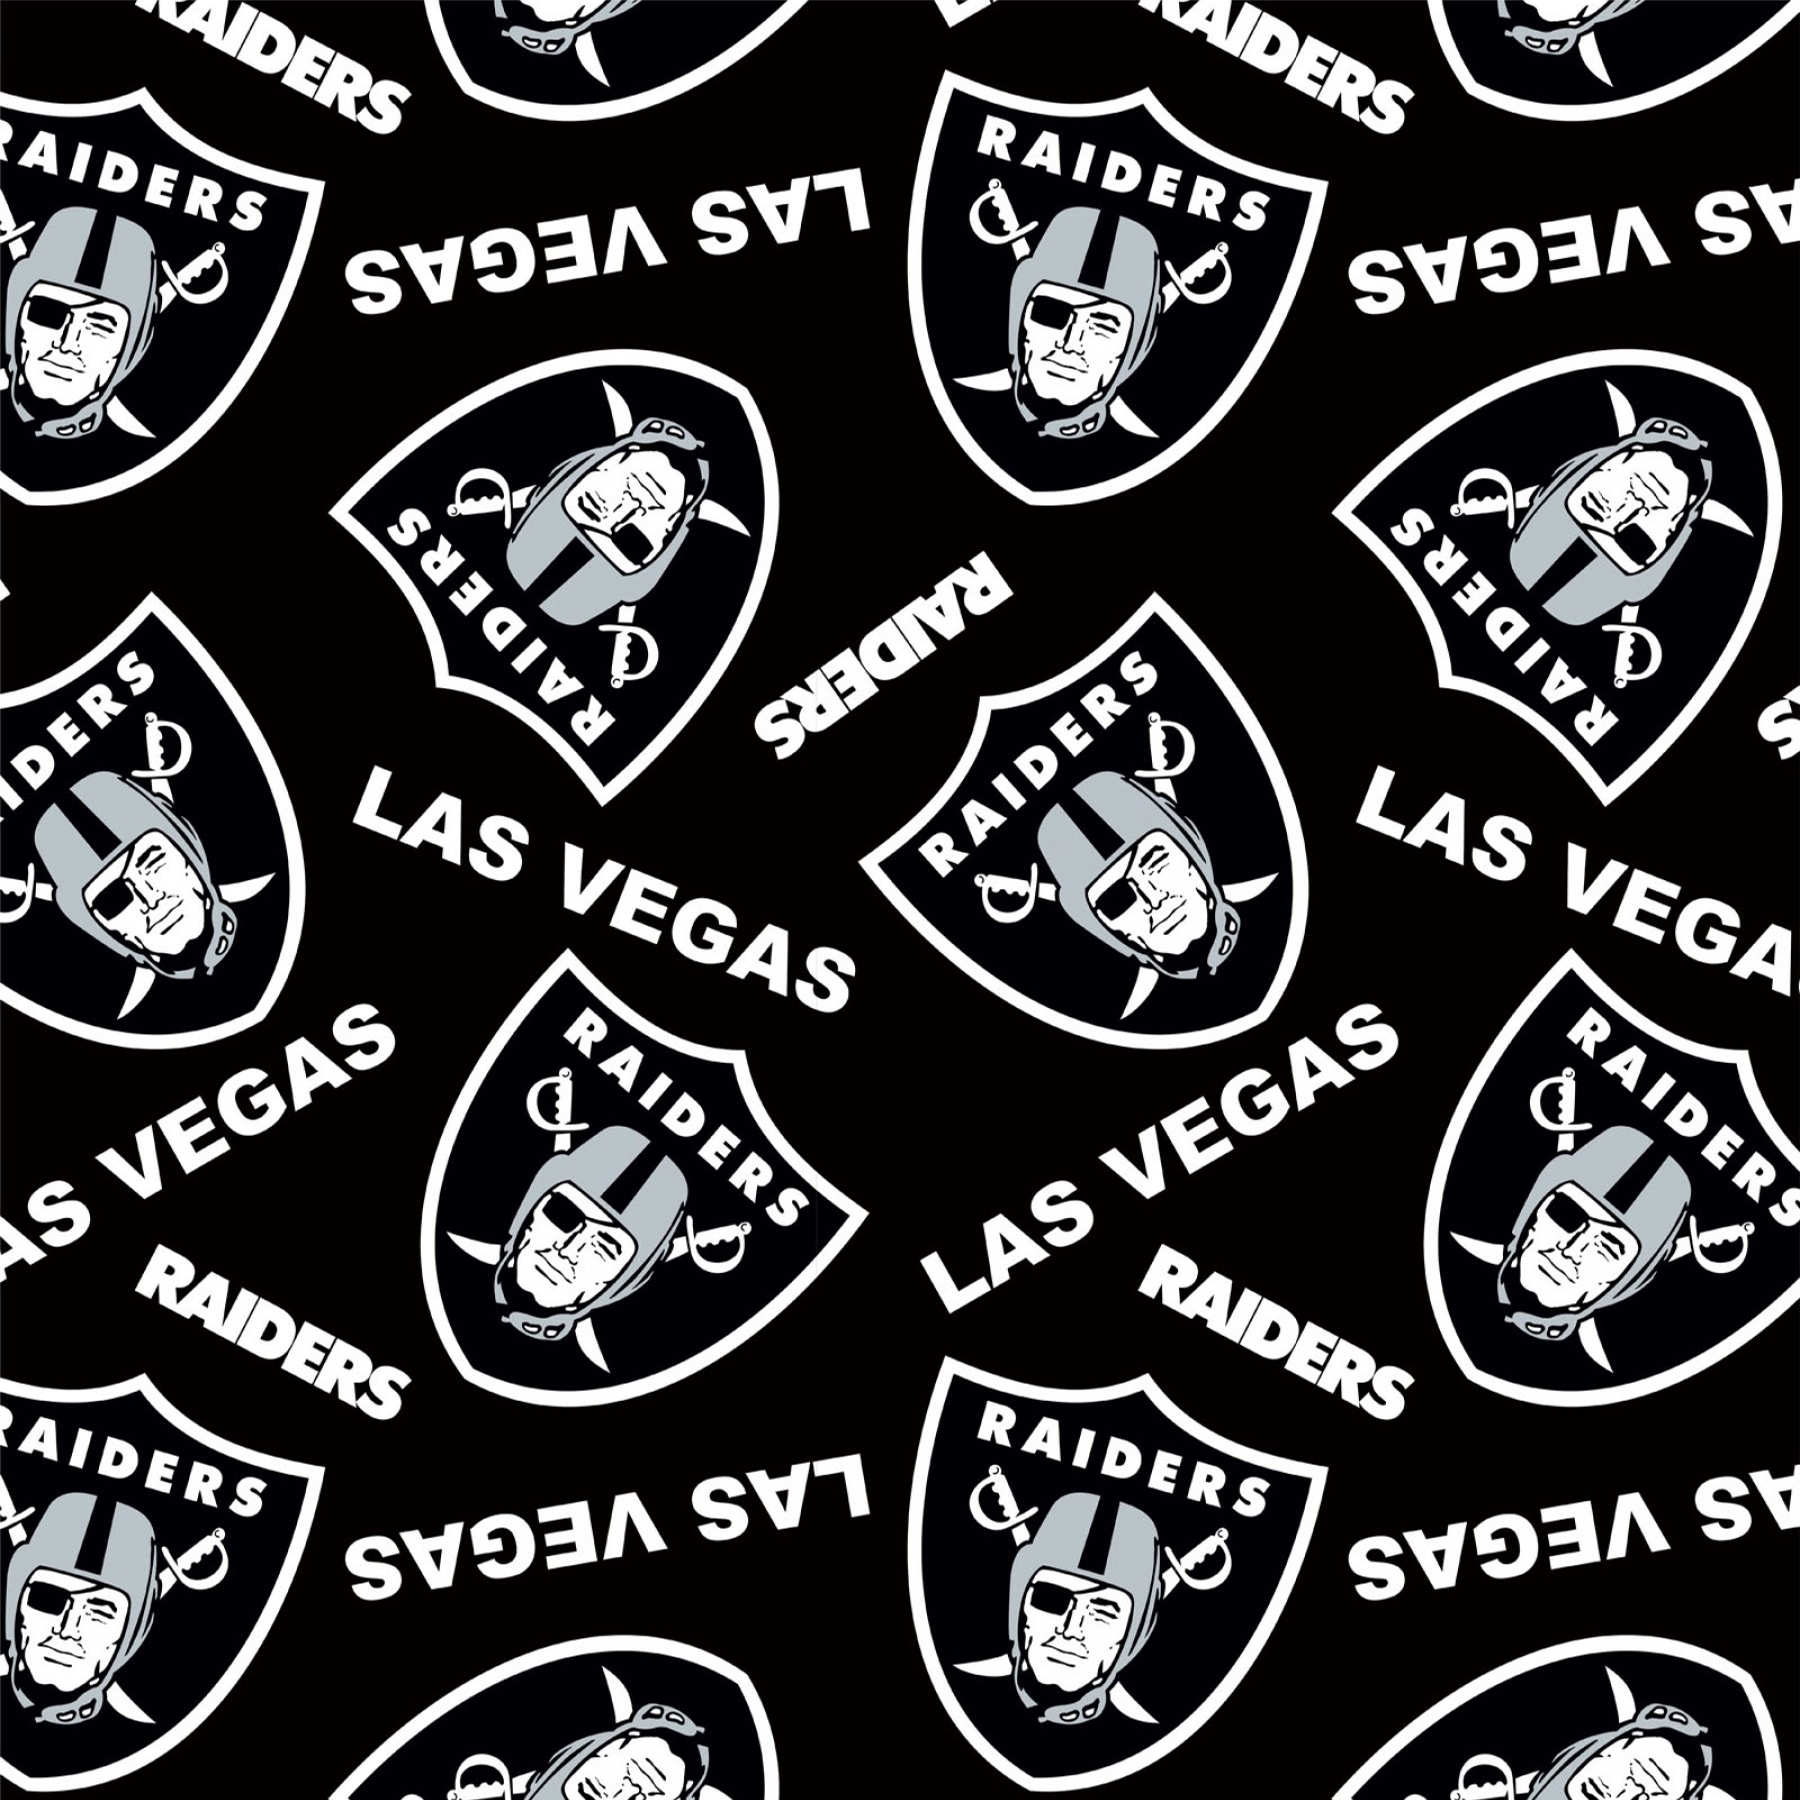 Las Vegas Raiders Team Pride Patches Quilt